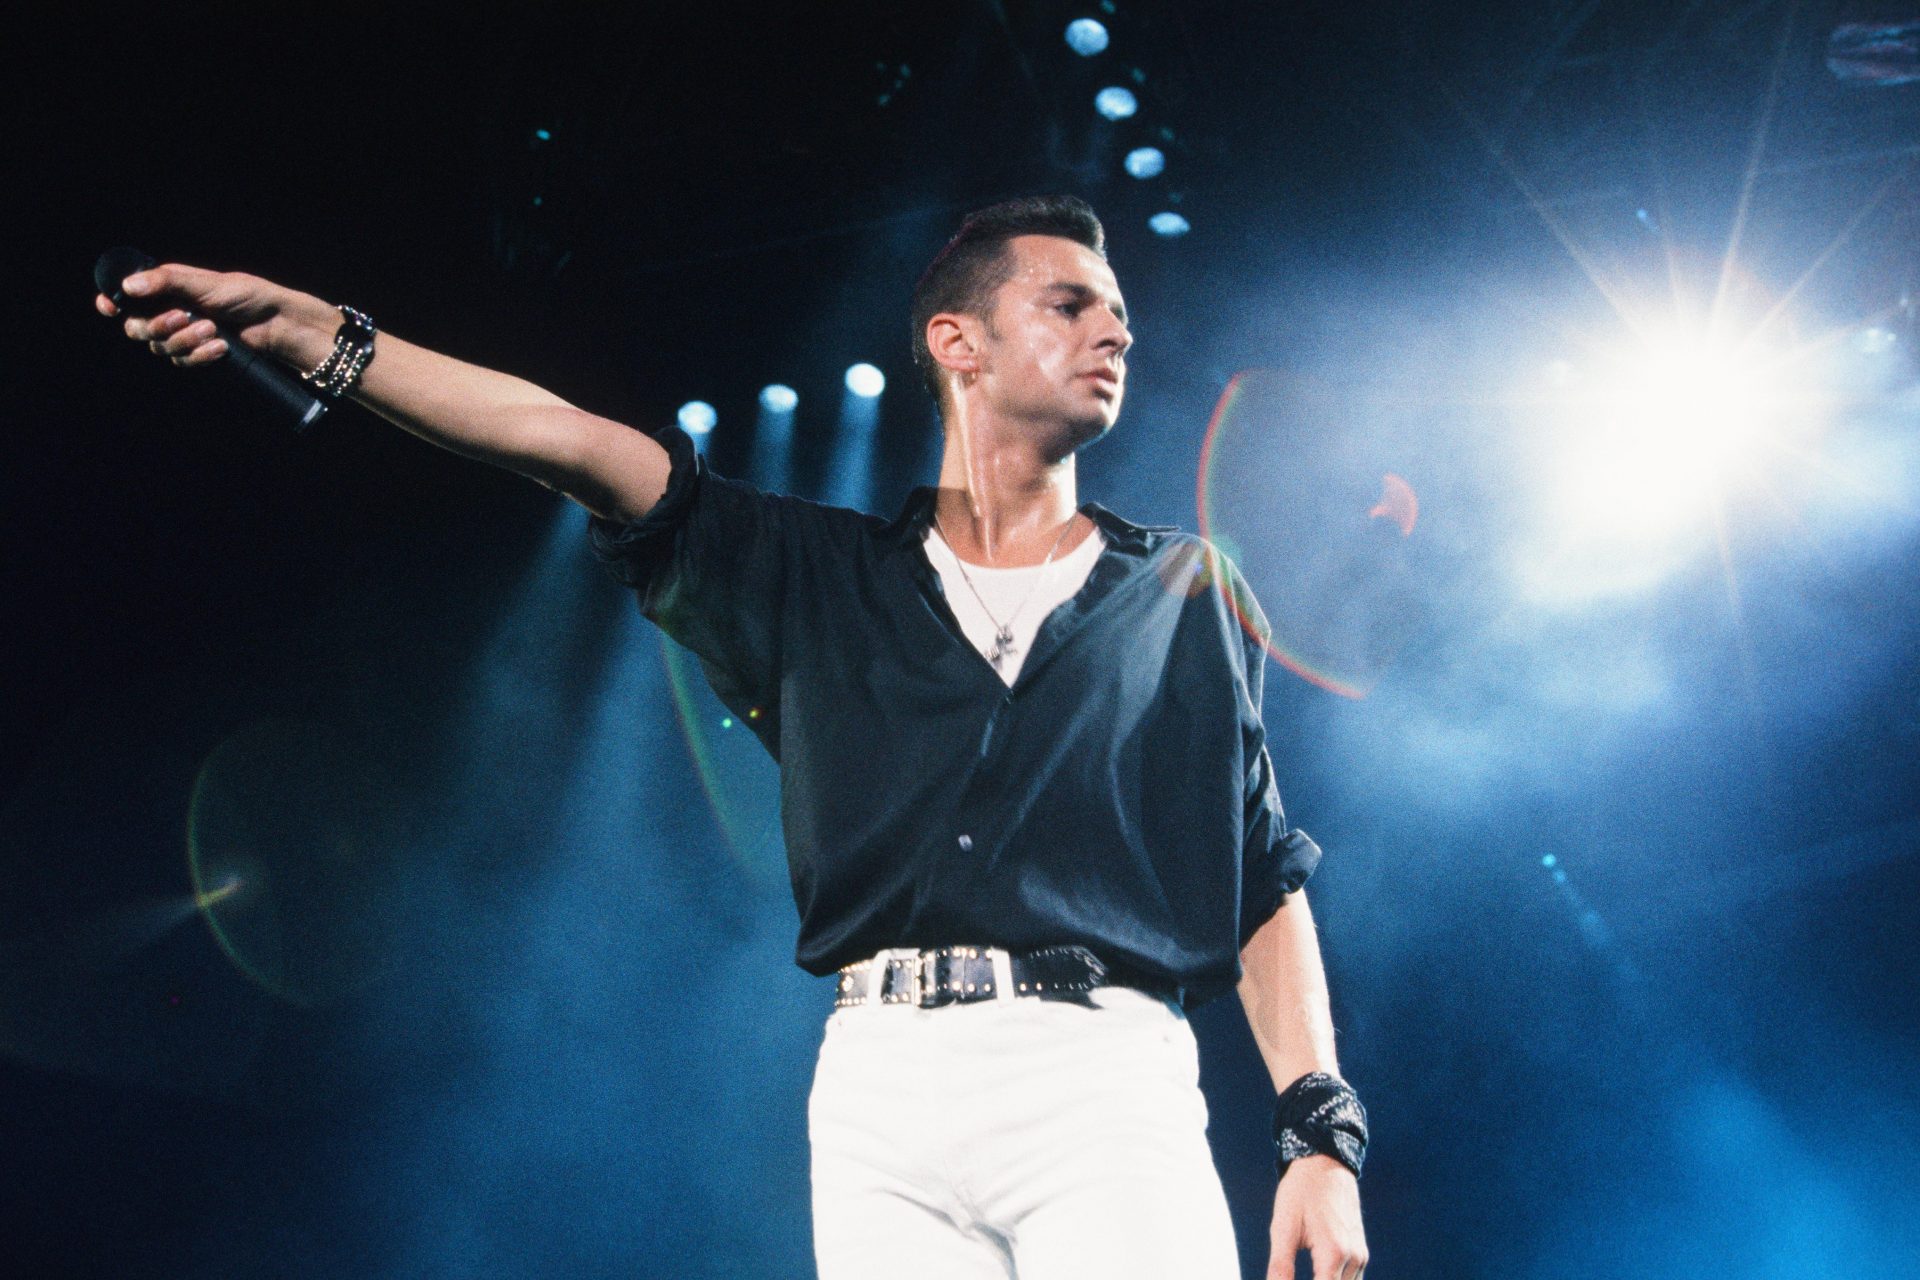 L'incredibile trasformazione di David Gahan, il cantante dei Depeche Mode